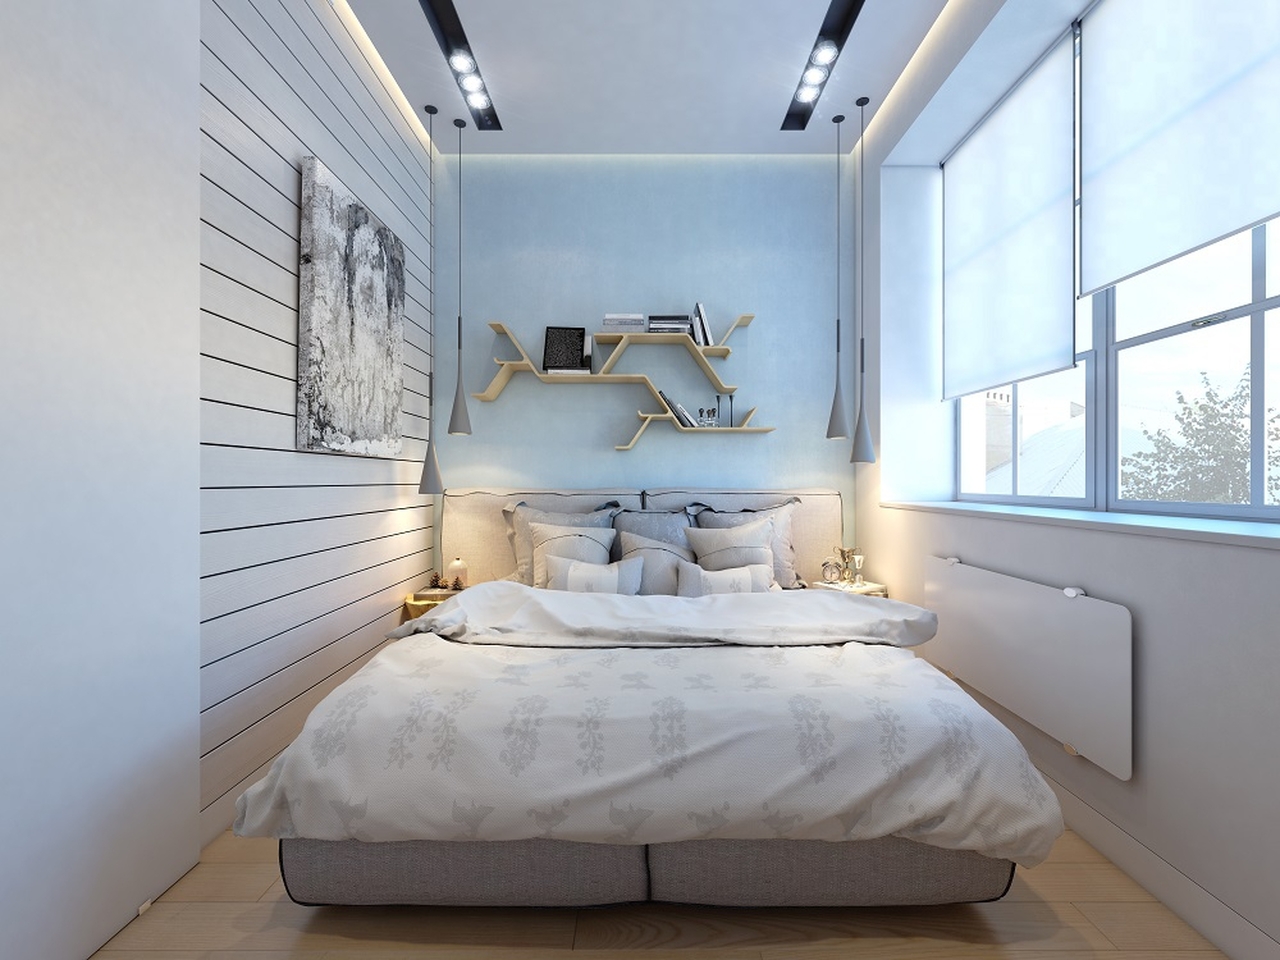 16 mẫu thiết kế trang trí phòng ngủ 3m2 siêu nhỏ đẹp